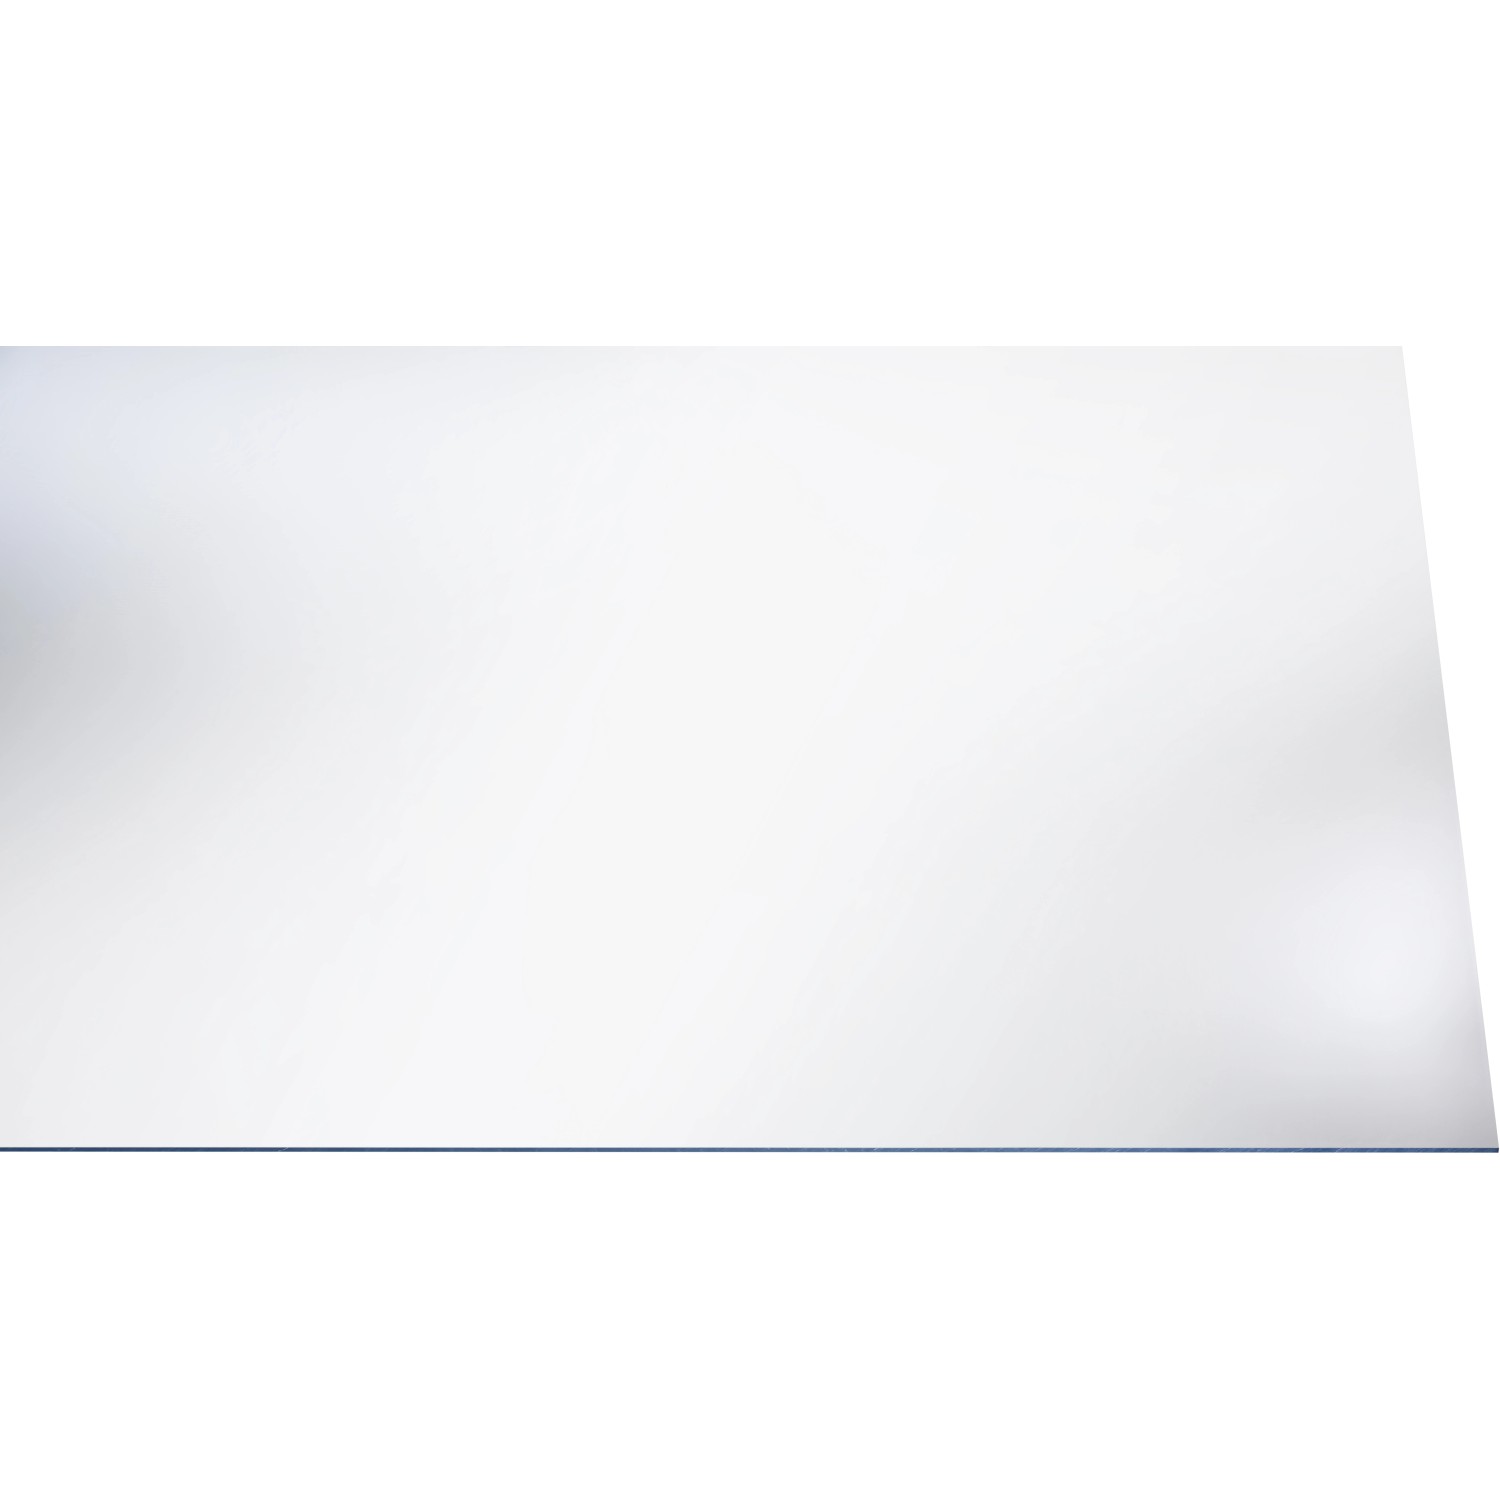 Pannello in polistirolo liscio Trasparente 200 x 100 cm / sp. 2,5 mm